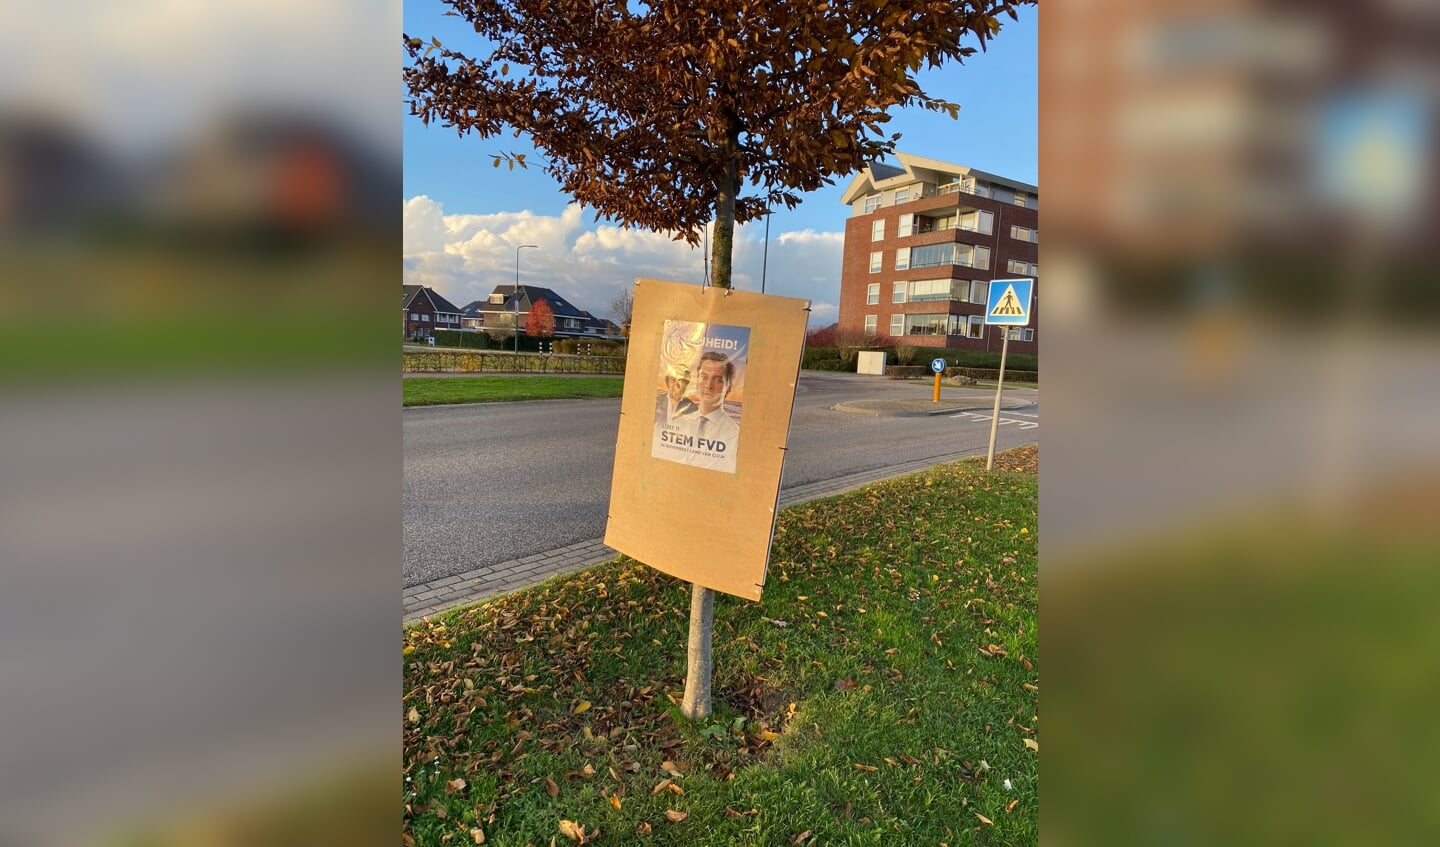 Aanhangers van FVD hebben aan de Lavendel in Cuijk een verkiezingsbord vernield en overplakt met eigen posters.